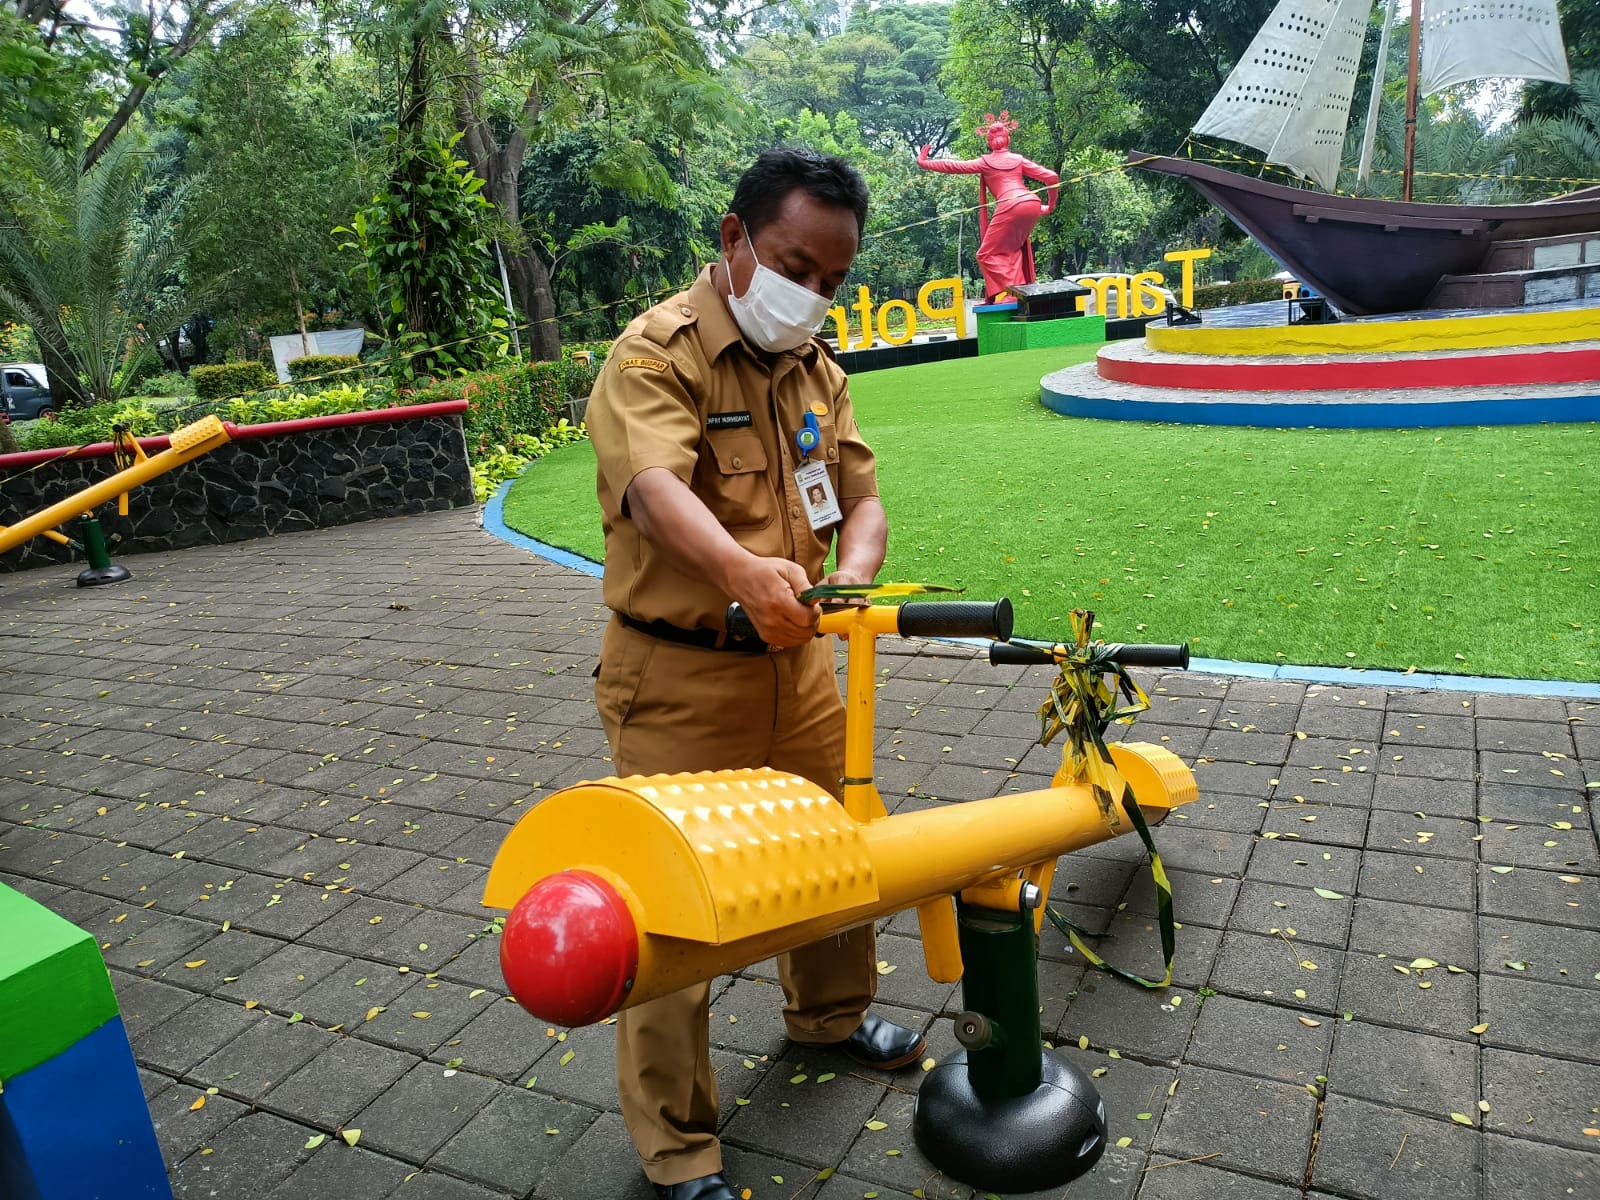 Tiga warga Jakarta berkunjung ke taman tematik di Taman Potret, Cikokol, Kota Tangerang, tetapi diimbau pihak Dinas Kebudayaan dan Pariwisata (Disbudpar) Kota Tangerang untuk kembali karena taman tematik masih ditutup.